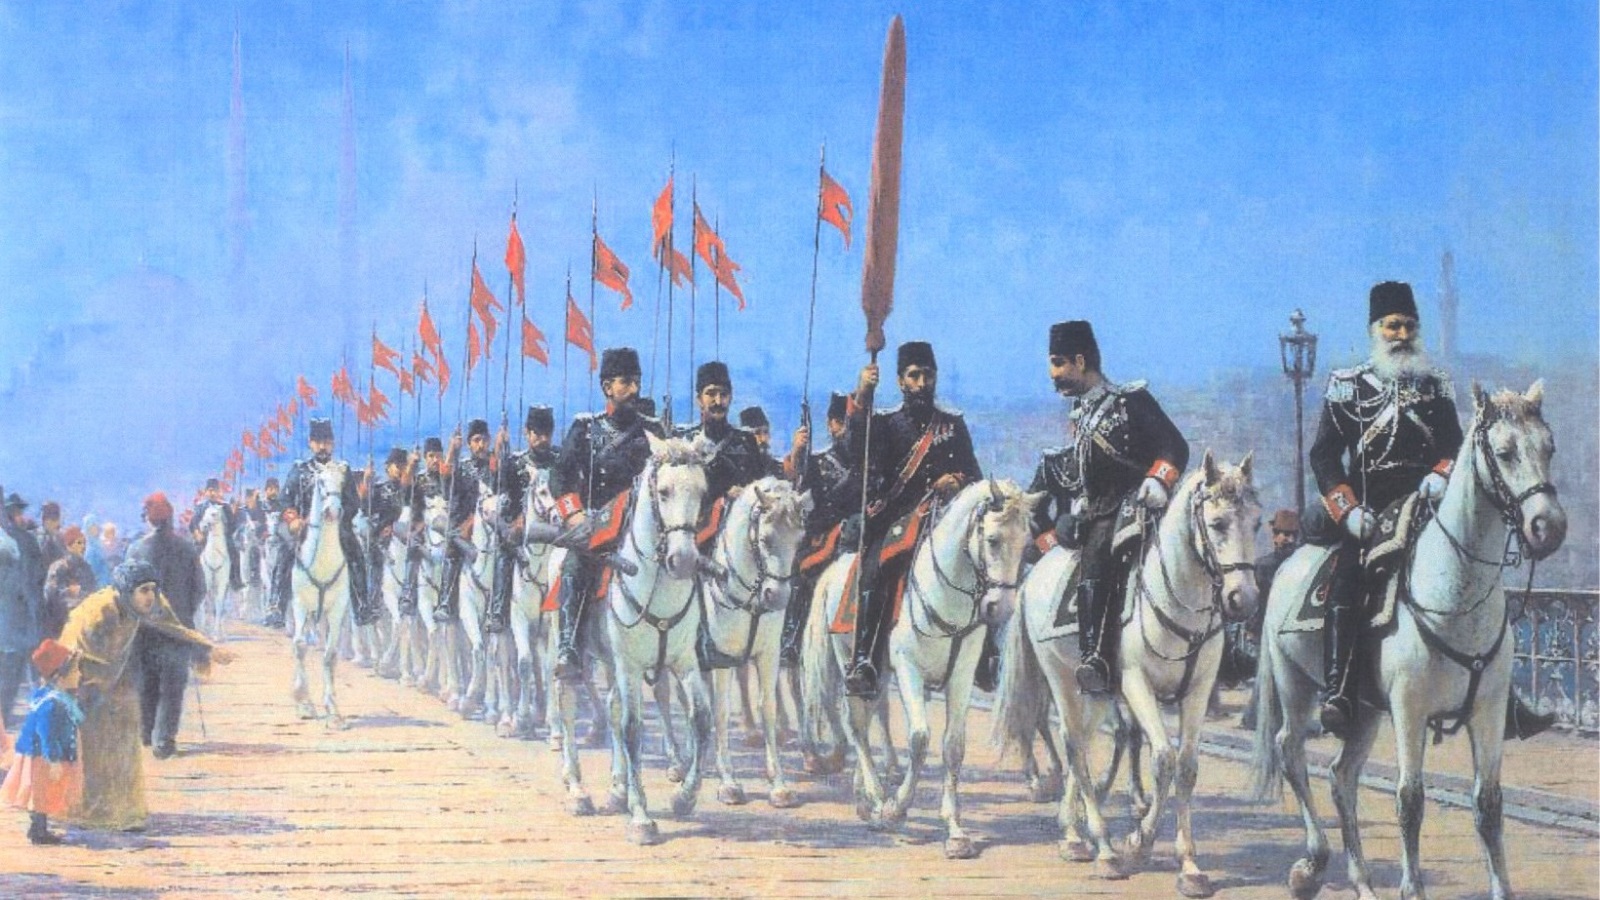 تغيرت الاستراتيجية العثمانية من السيطرة المباشرة واحتلال مواقع العدو كما كان الحال في مناطق الشام والعراق واليمن ومصر إلى الاكتفاء بالمبايعة والطاعة